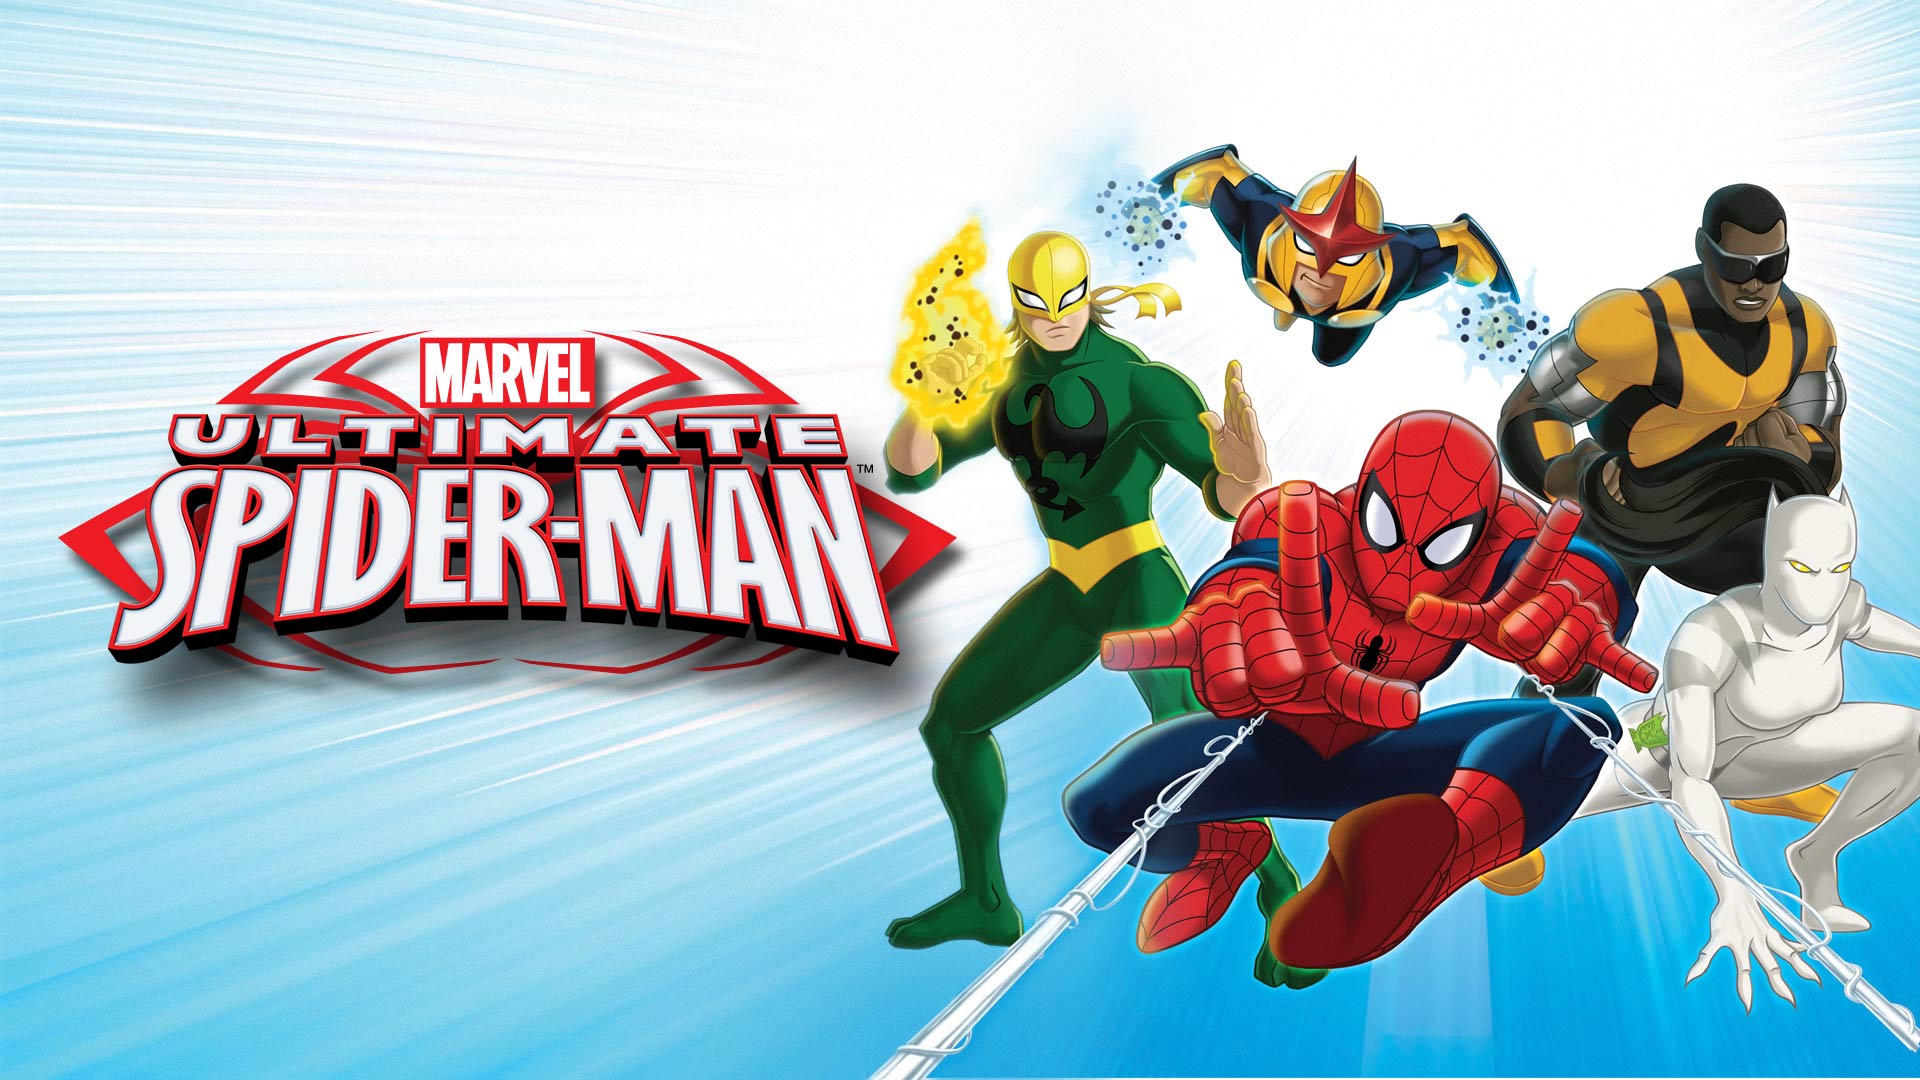 Marvel's Ultimate Spider-Man - Disney+ Hotstar